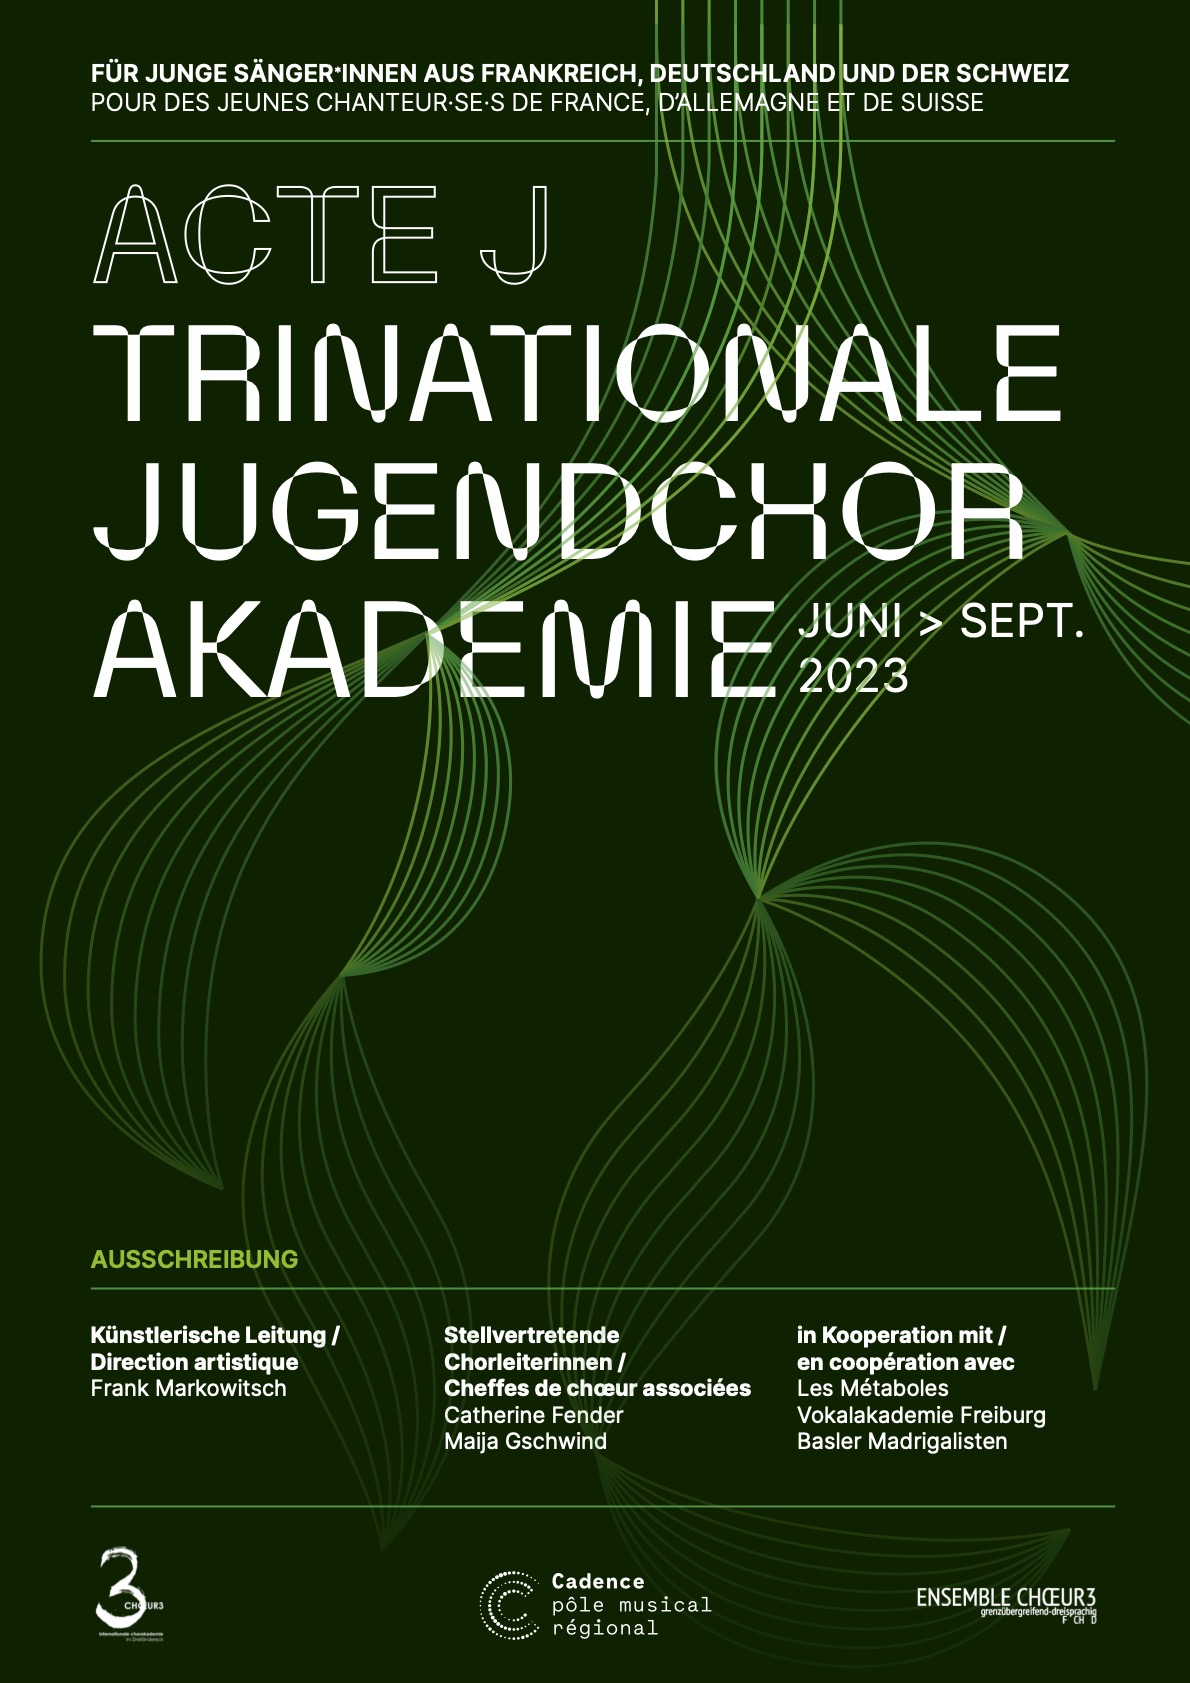 Zweite Ausgabe der Trinationalen Jugendchorakademie ACTE J